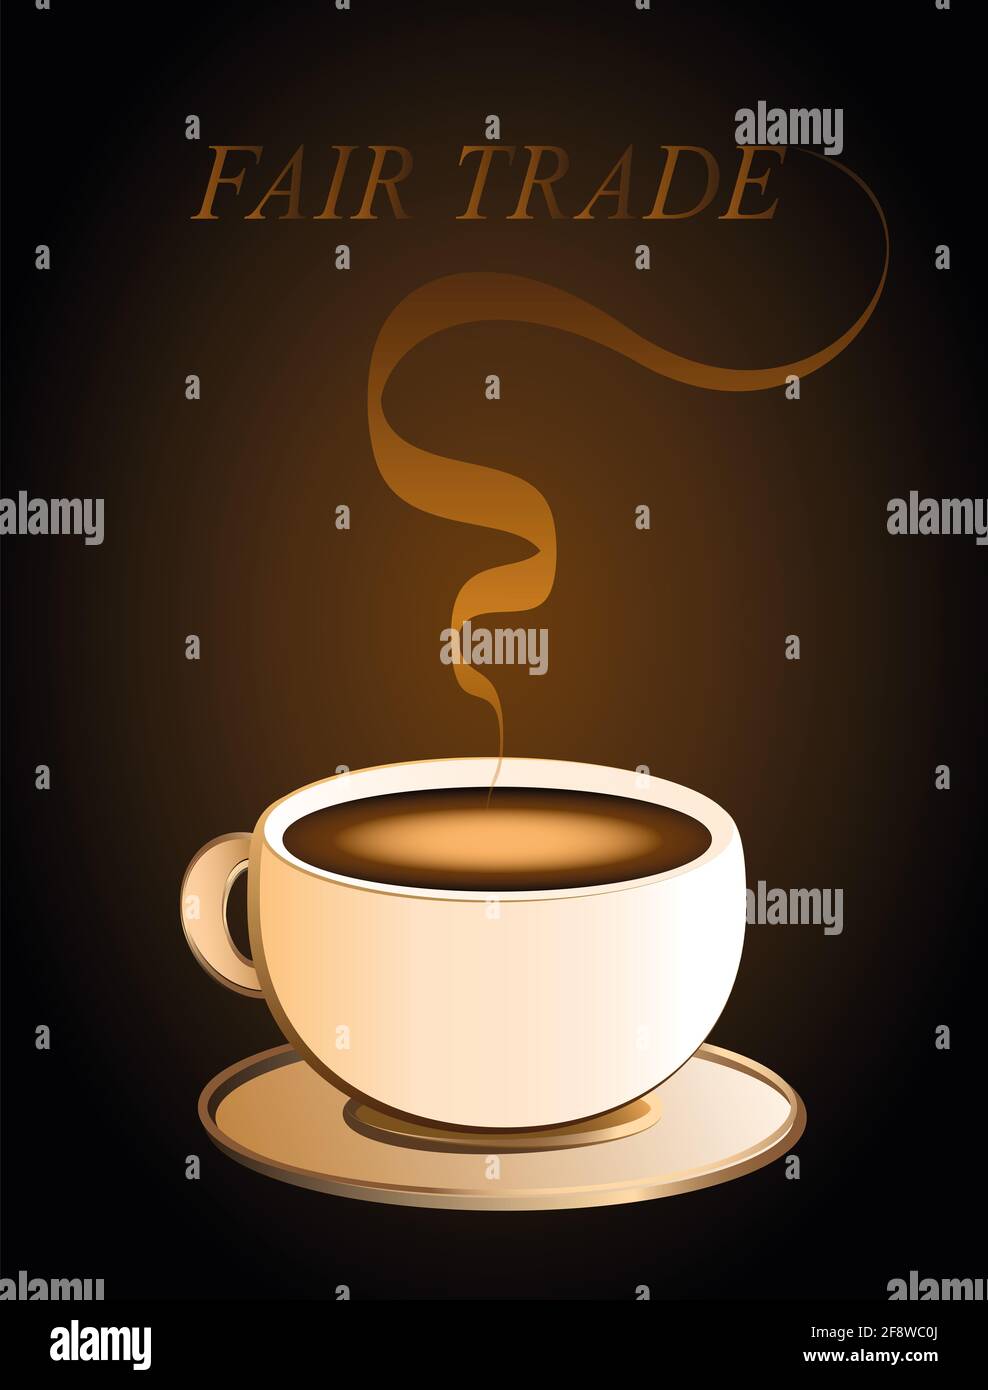 Fairtrade-Kaffee mit Aroma und FAIR-TRADE-Text - Illustration auf braunem Hintergrund. Stockfoto